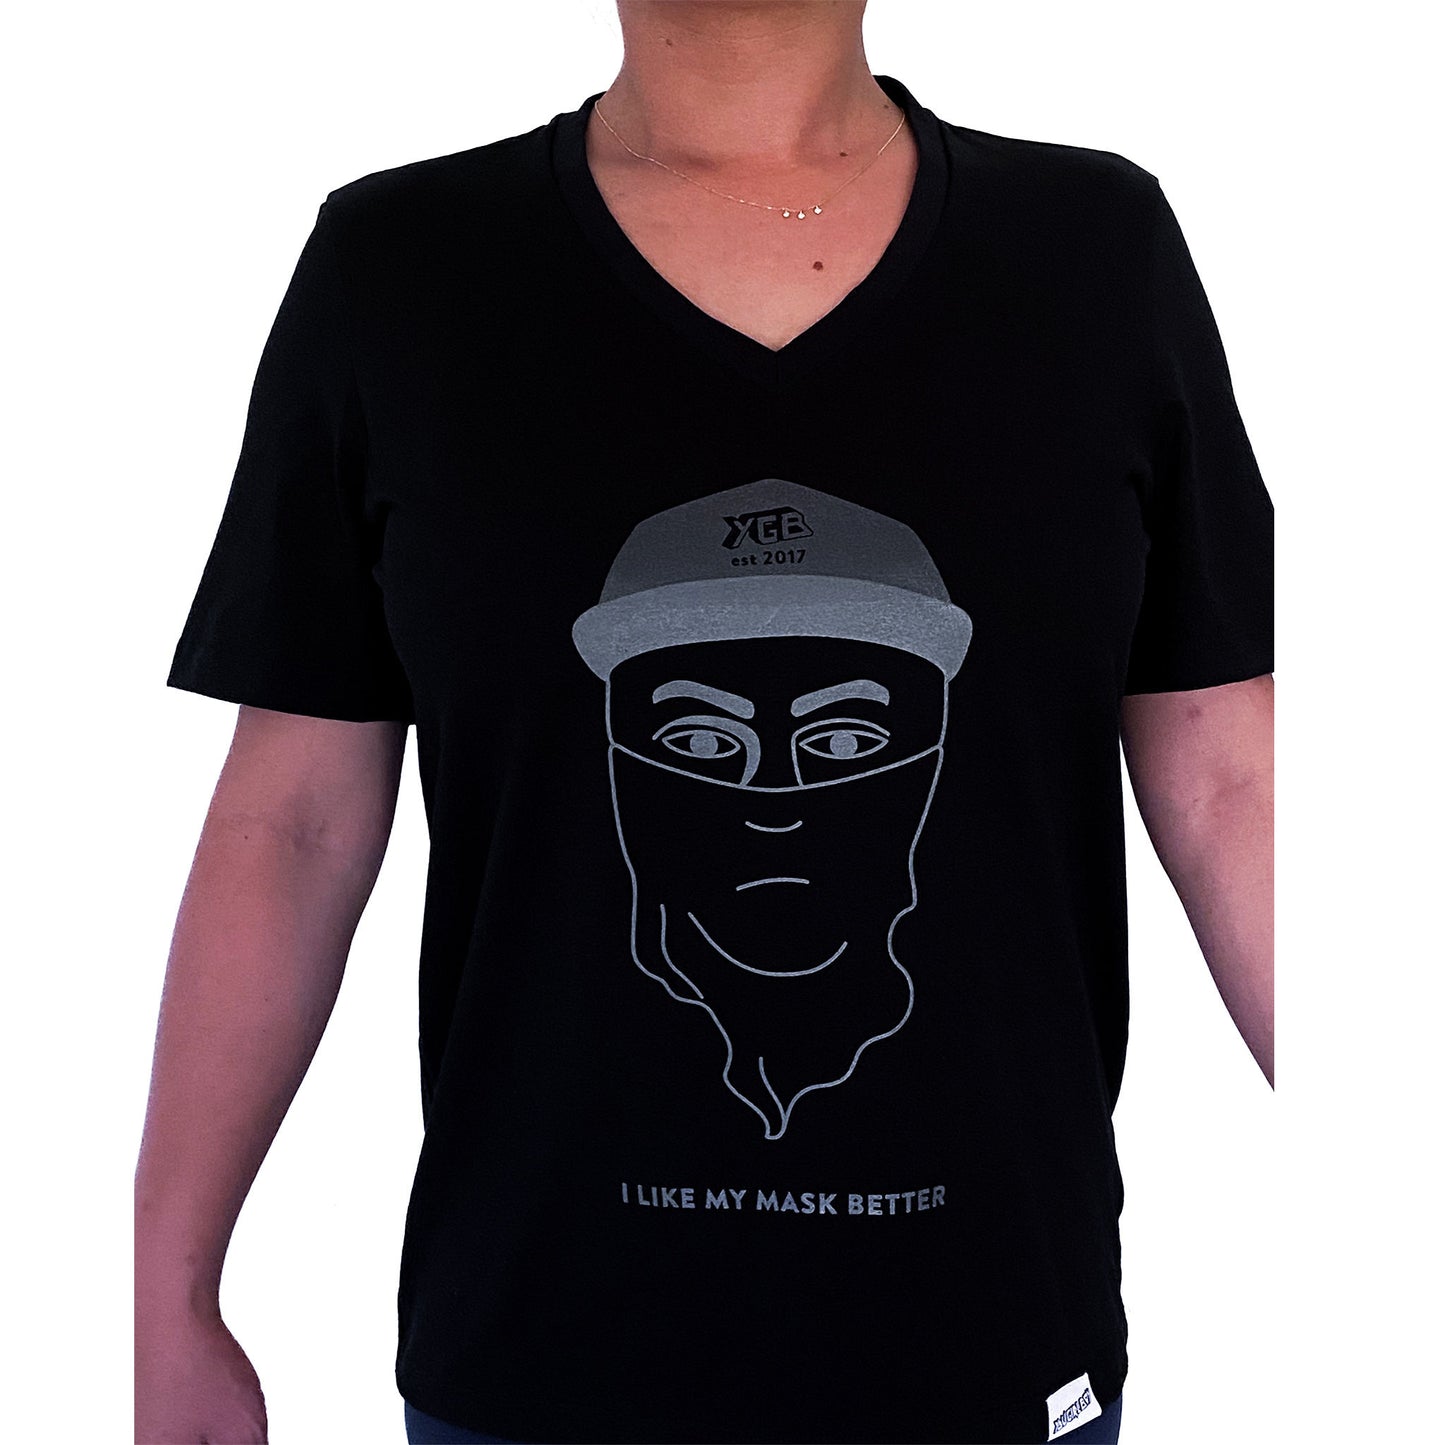 Ethically Made Organic Unisex Black V Neck T-Shirt - 'I Like My Mask Better'